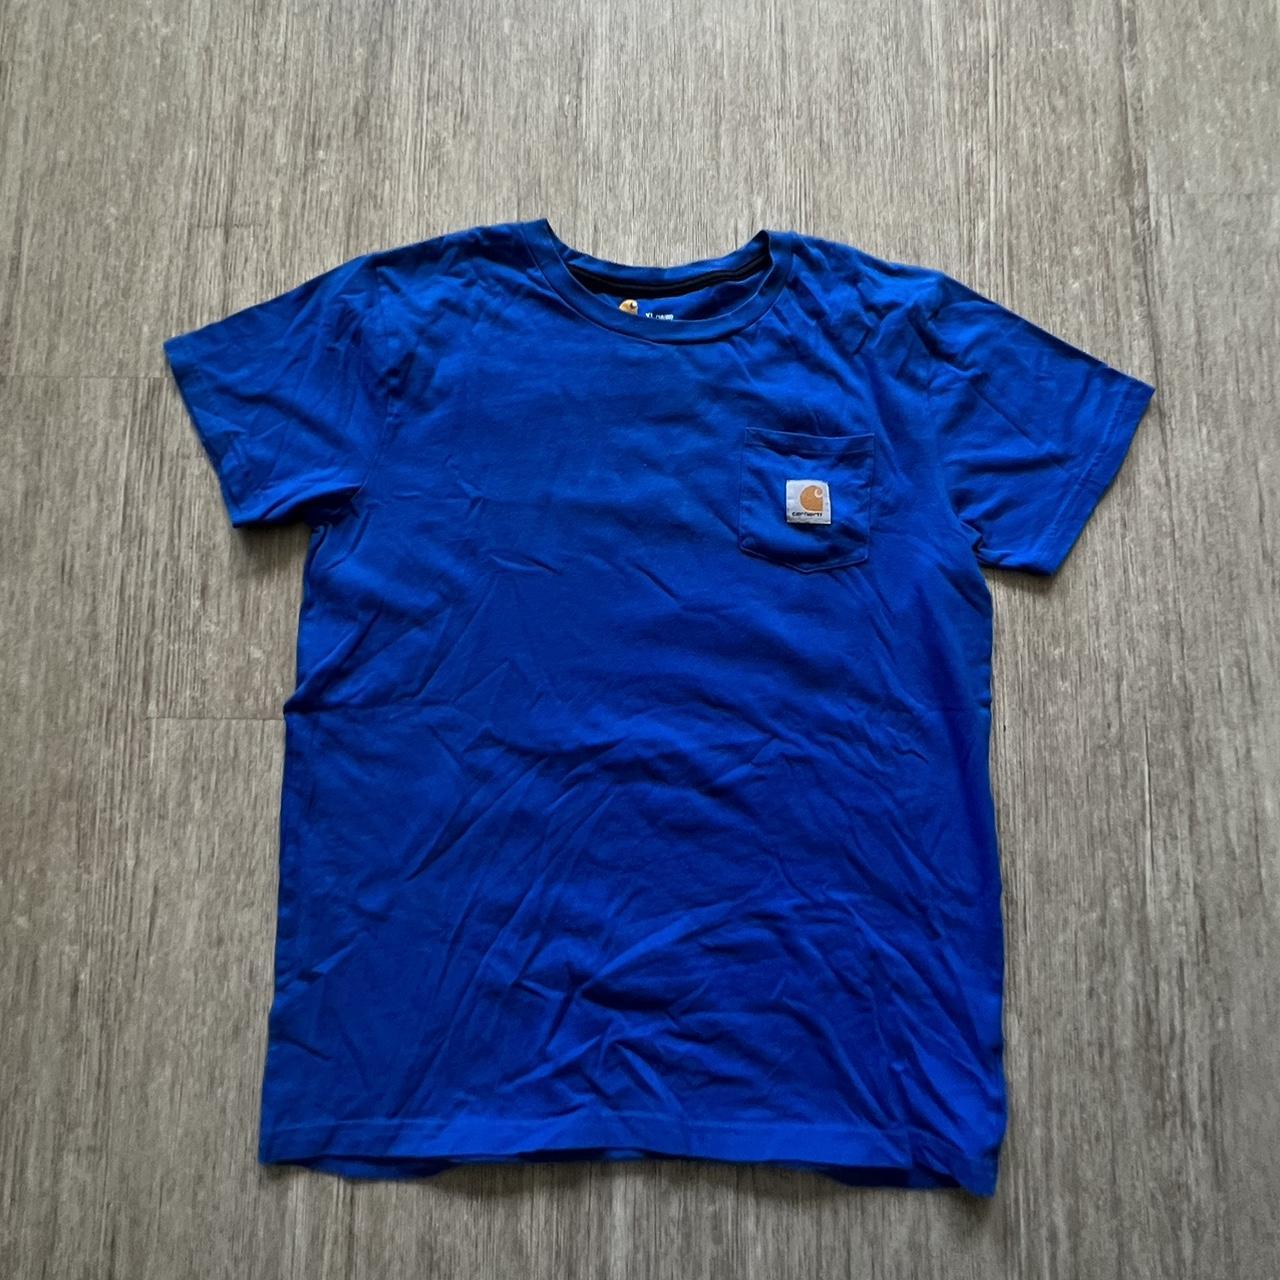 Carhartt youth XL T shirt (men’s small) - Depop